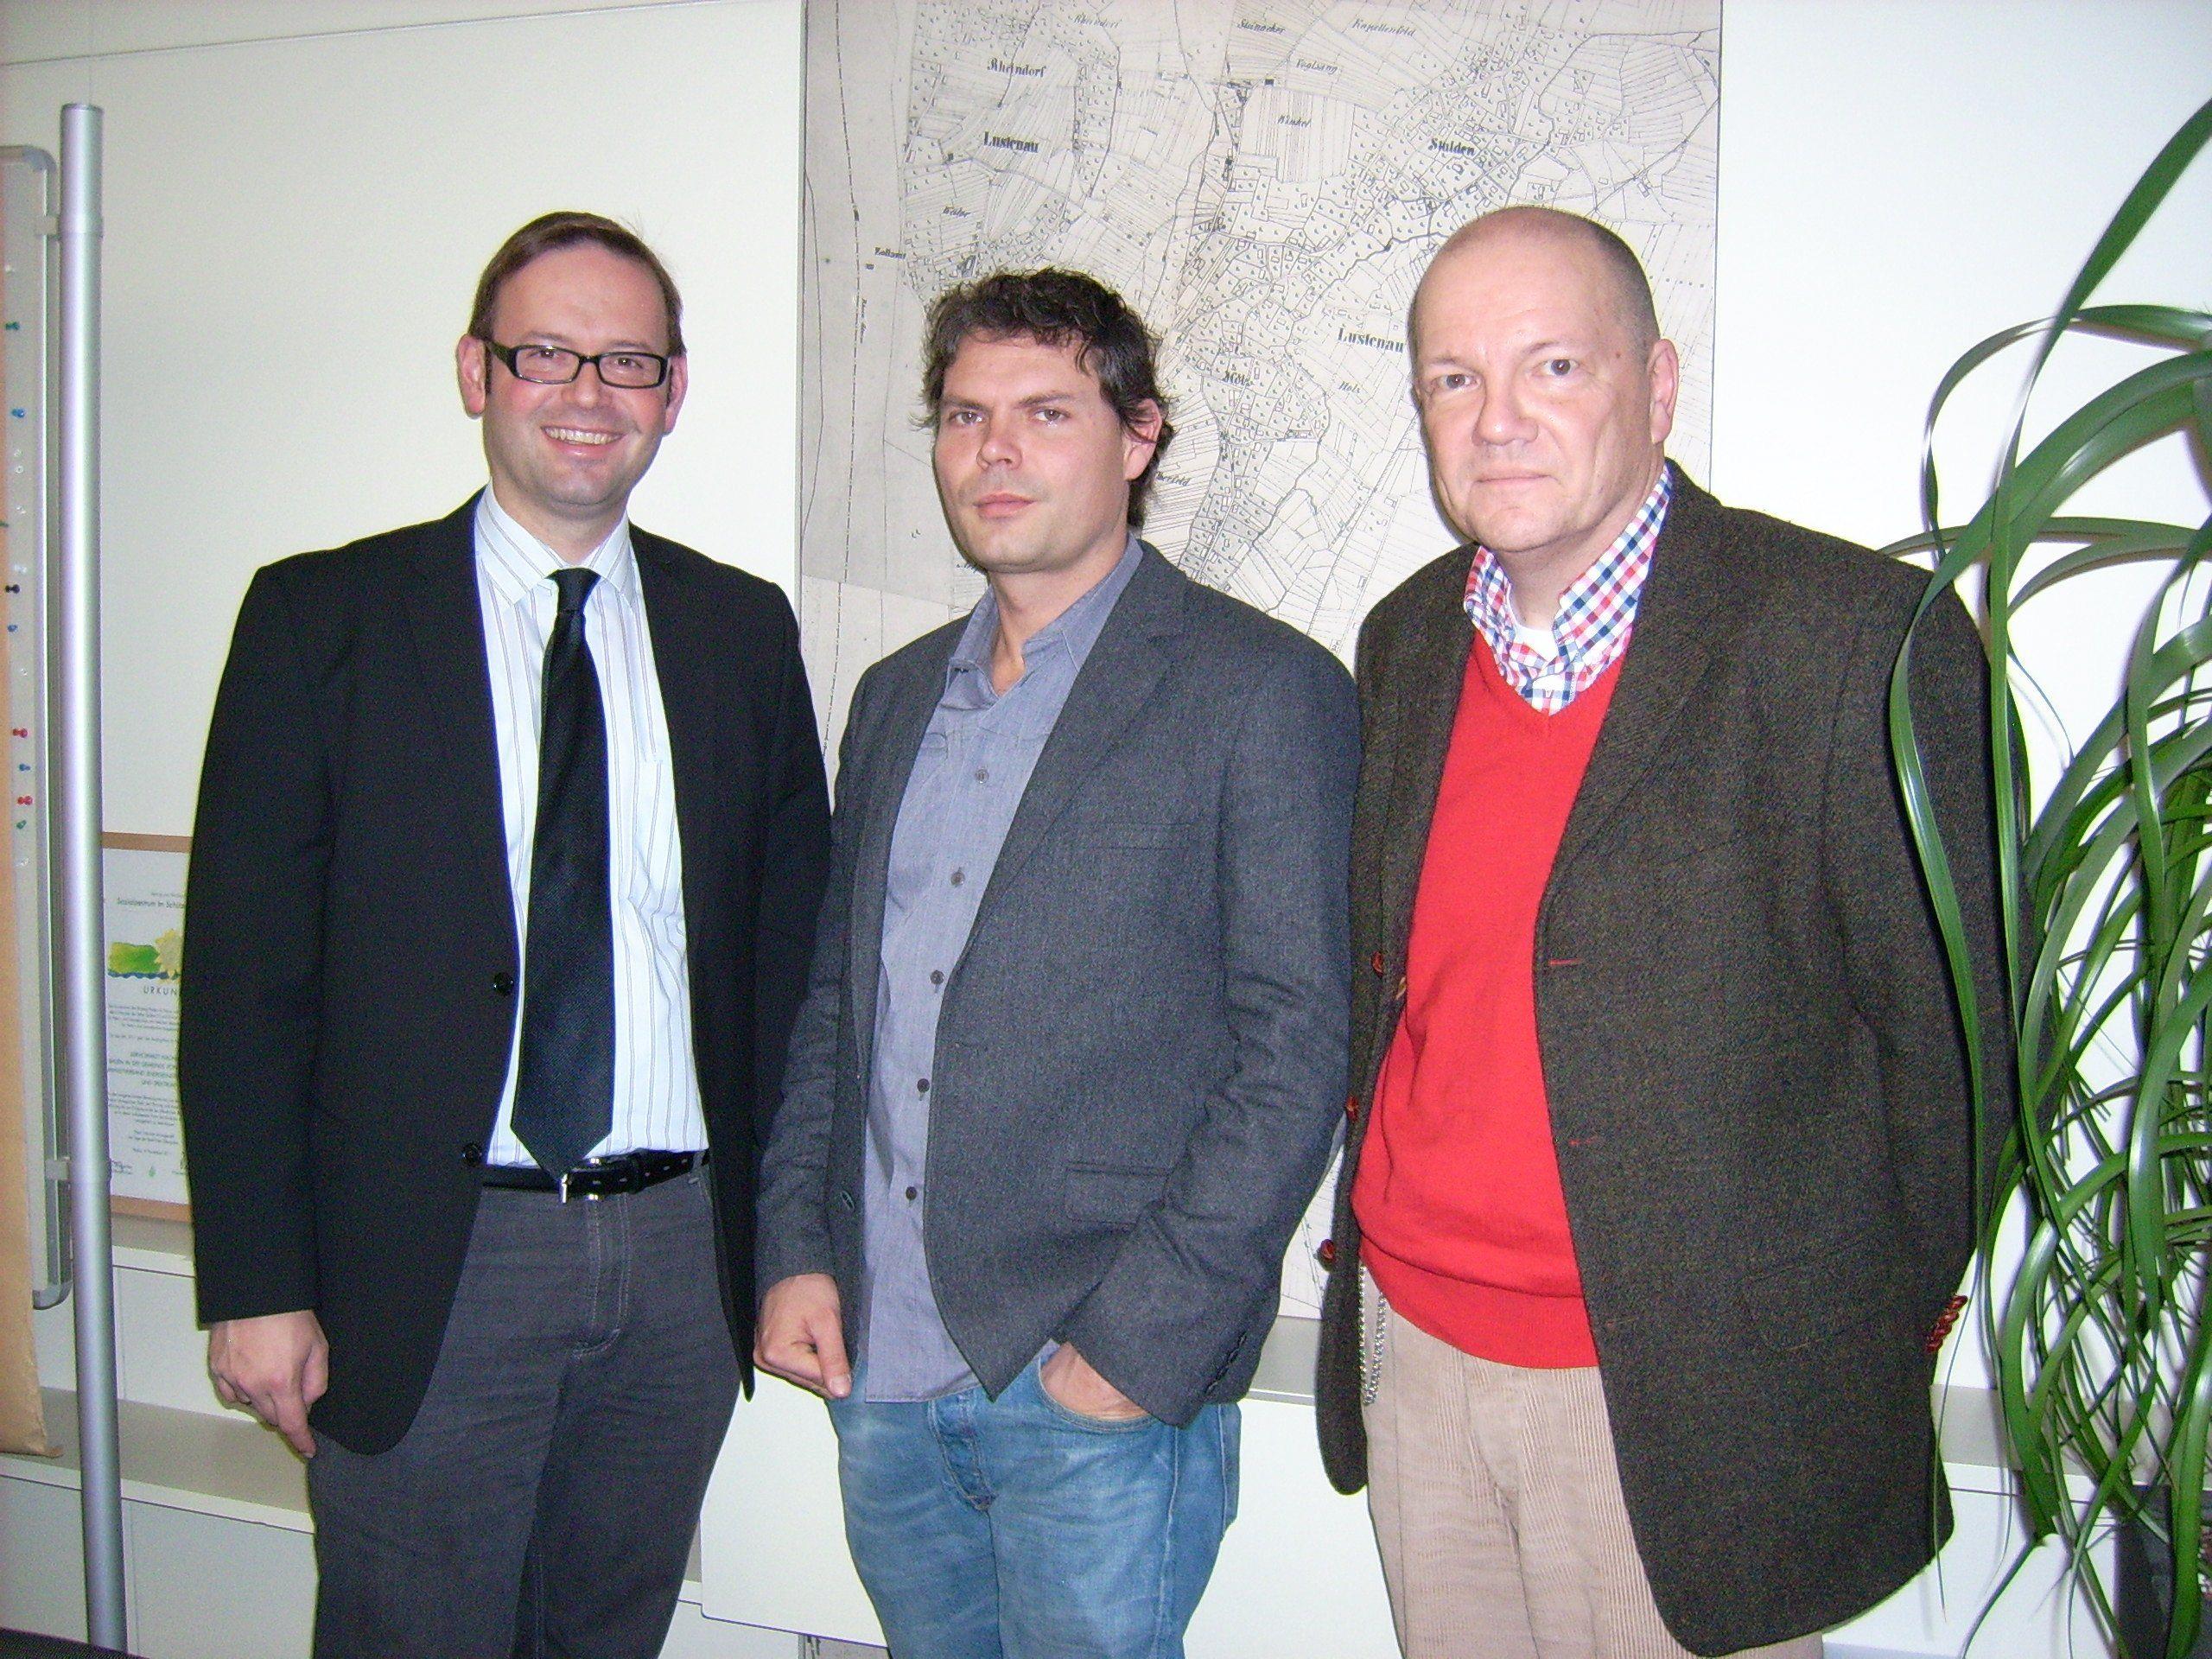 Kulturreferent Daniel Steinhofer mit den Archivaren Oliver Heinzle und Dr. Wolfgang Scheffknecht (v.l.)